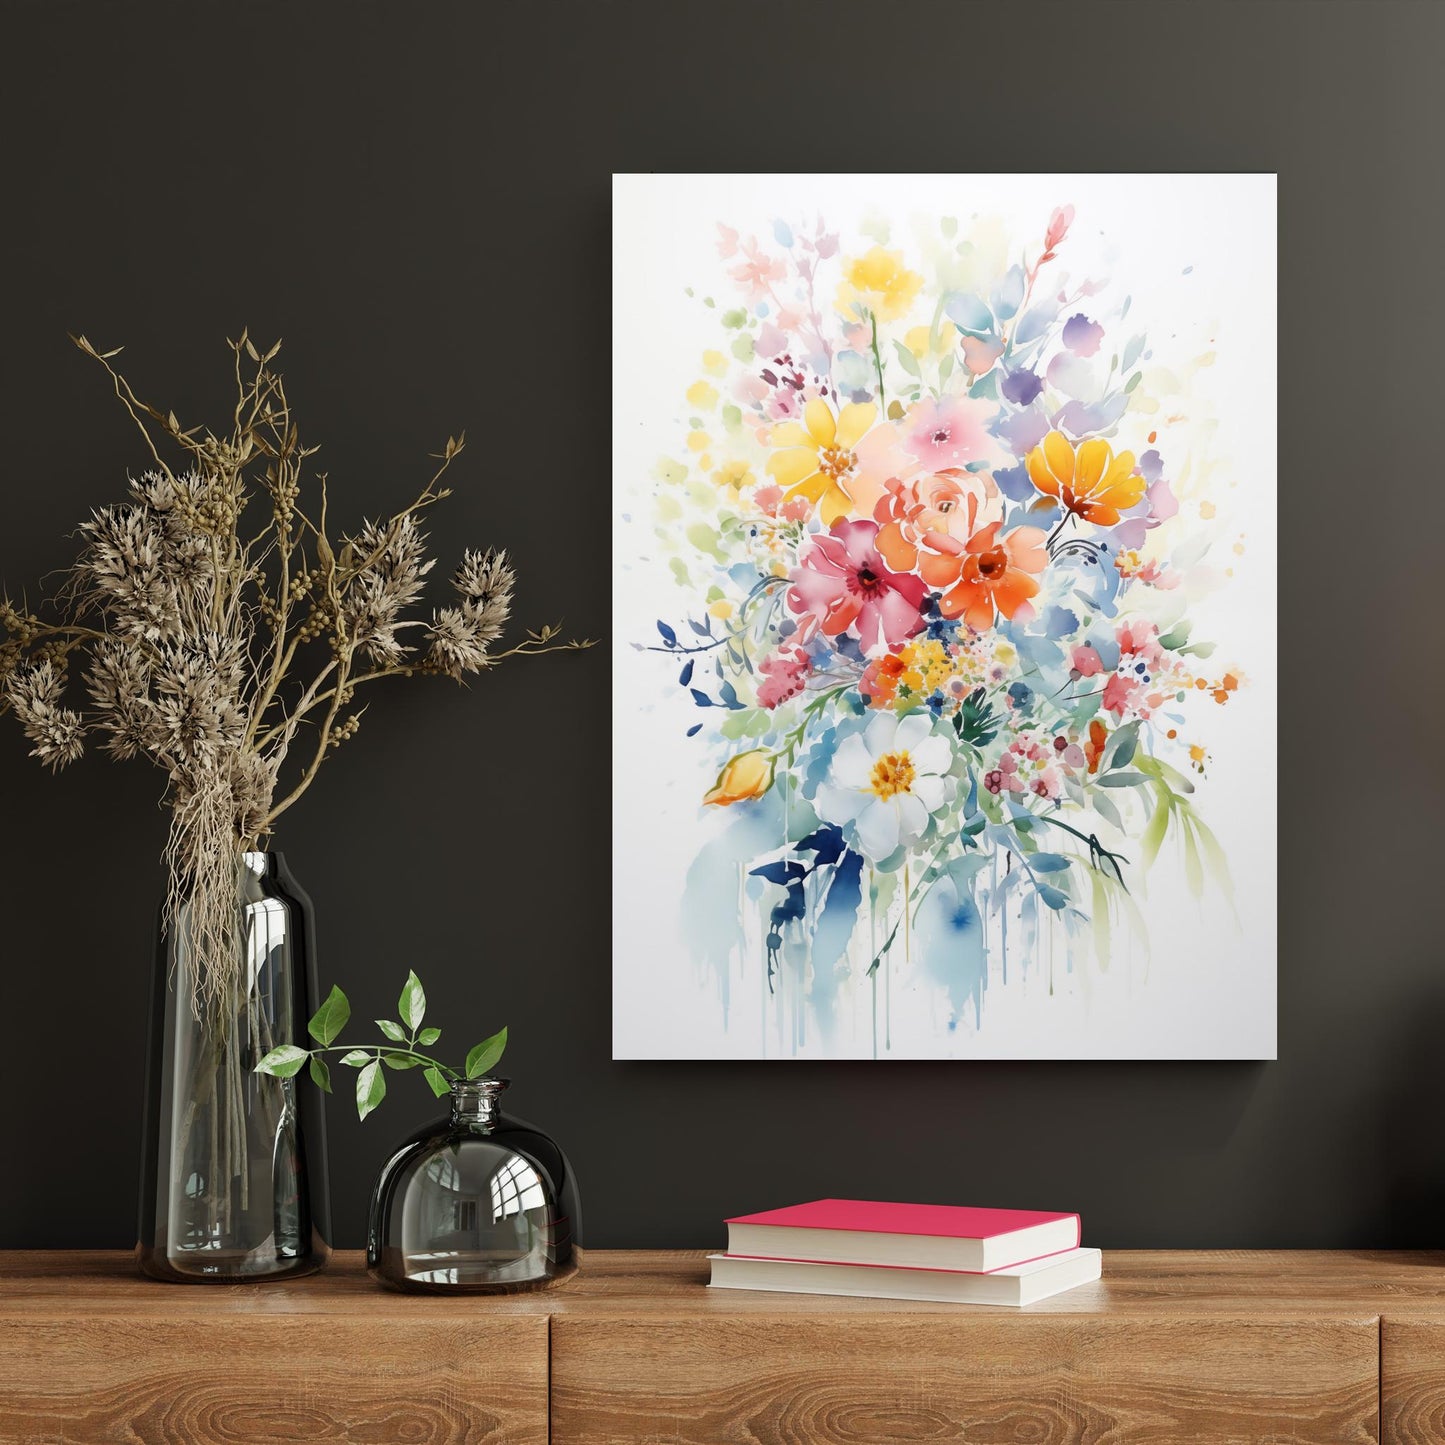 Dreamy Flower Bouquet IX - Atka Inspirations